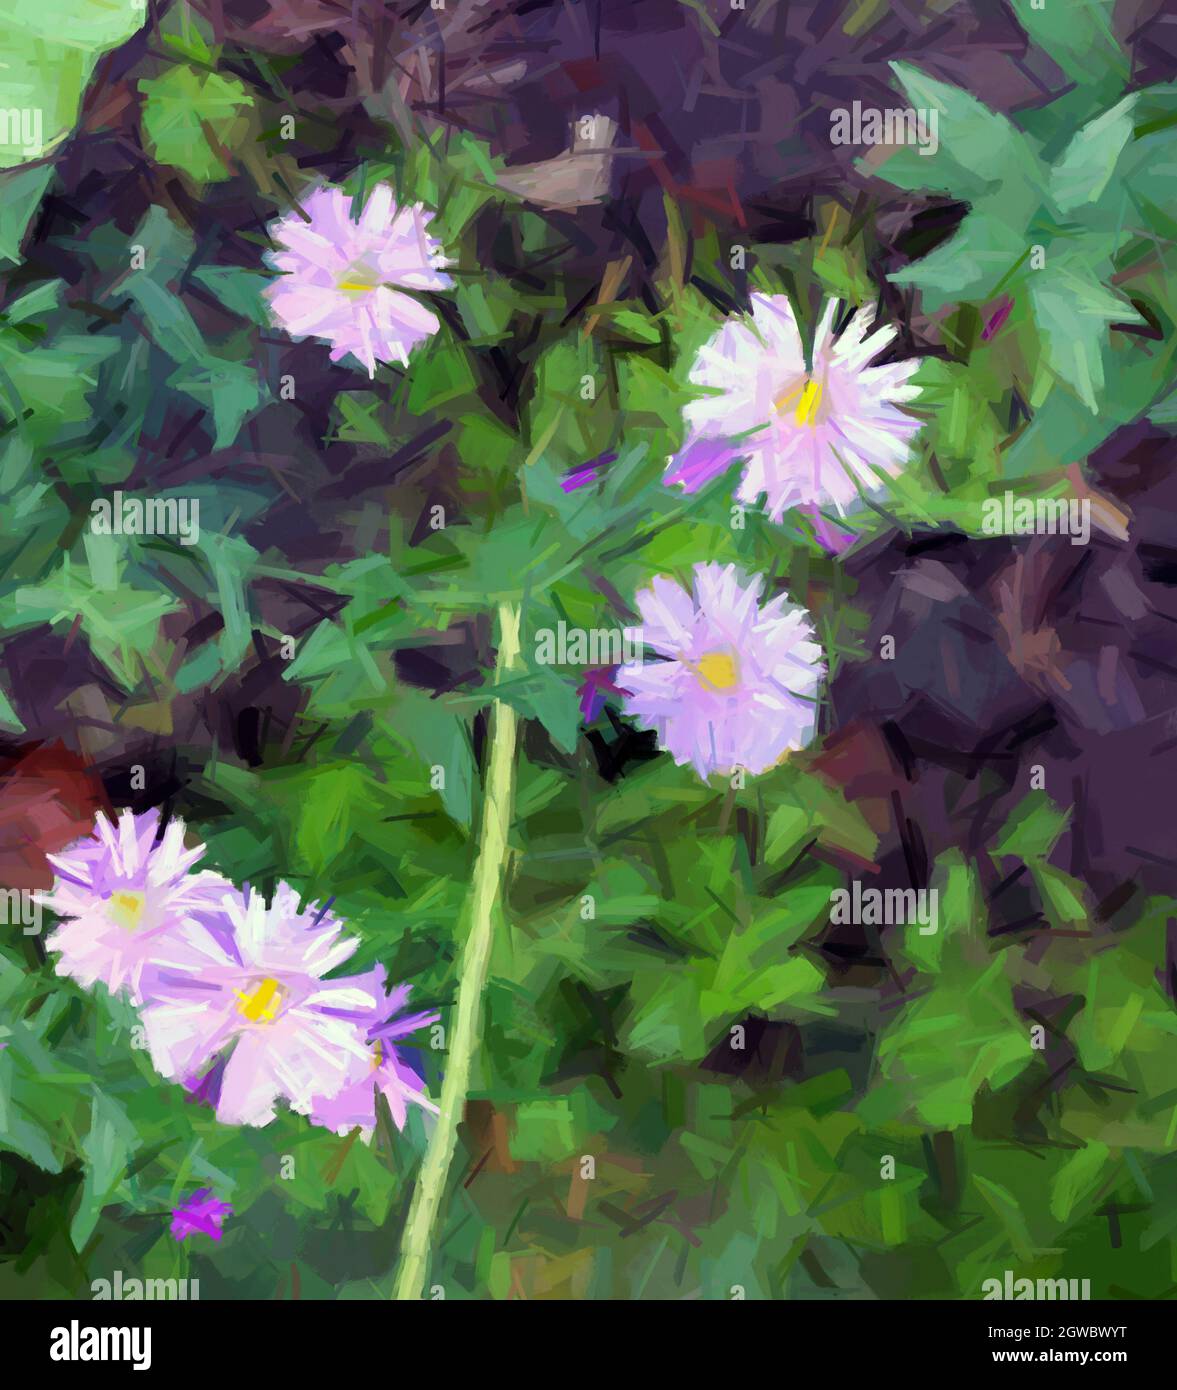 Belle carte fleurie, peinture numérique Banque D'Images